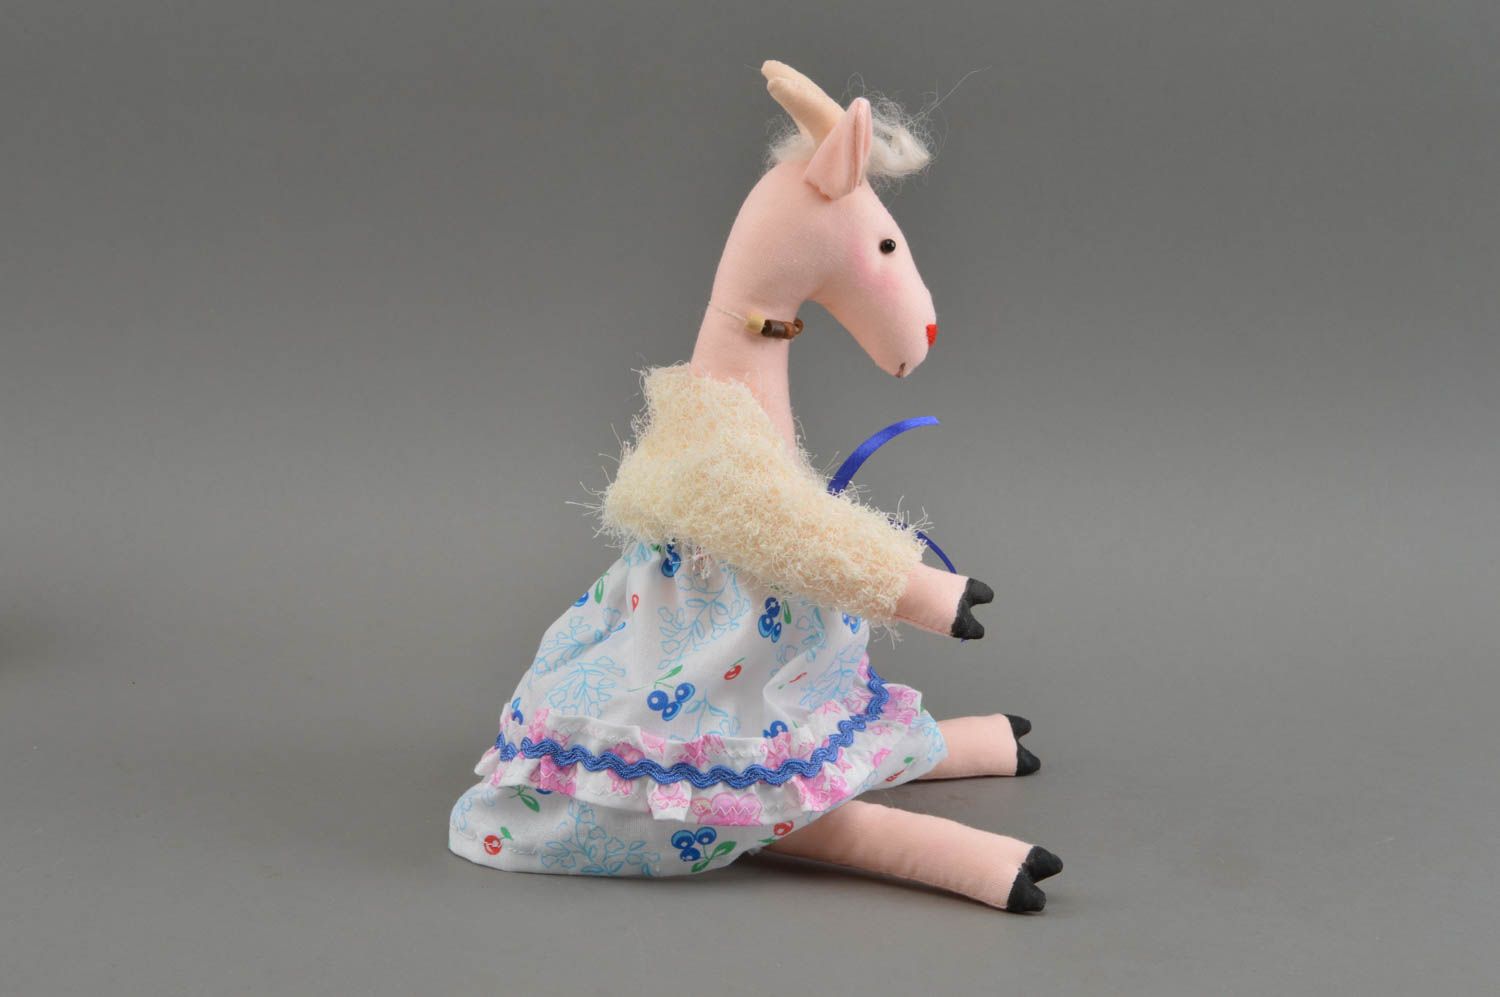 Тканевая игрушка в виде овечки смешная в платье необычная ручной работы фото 3